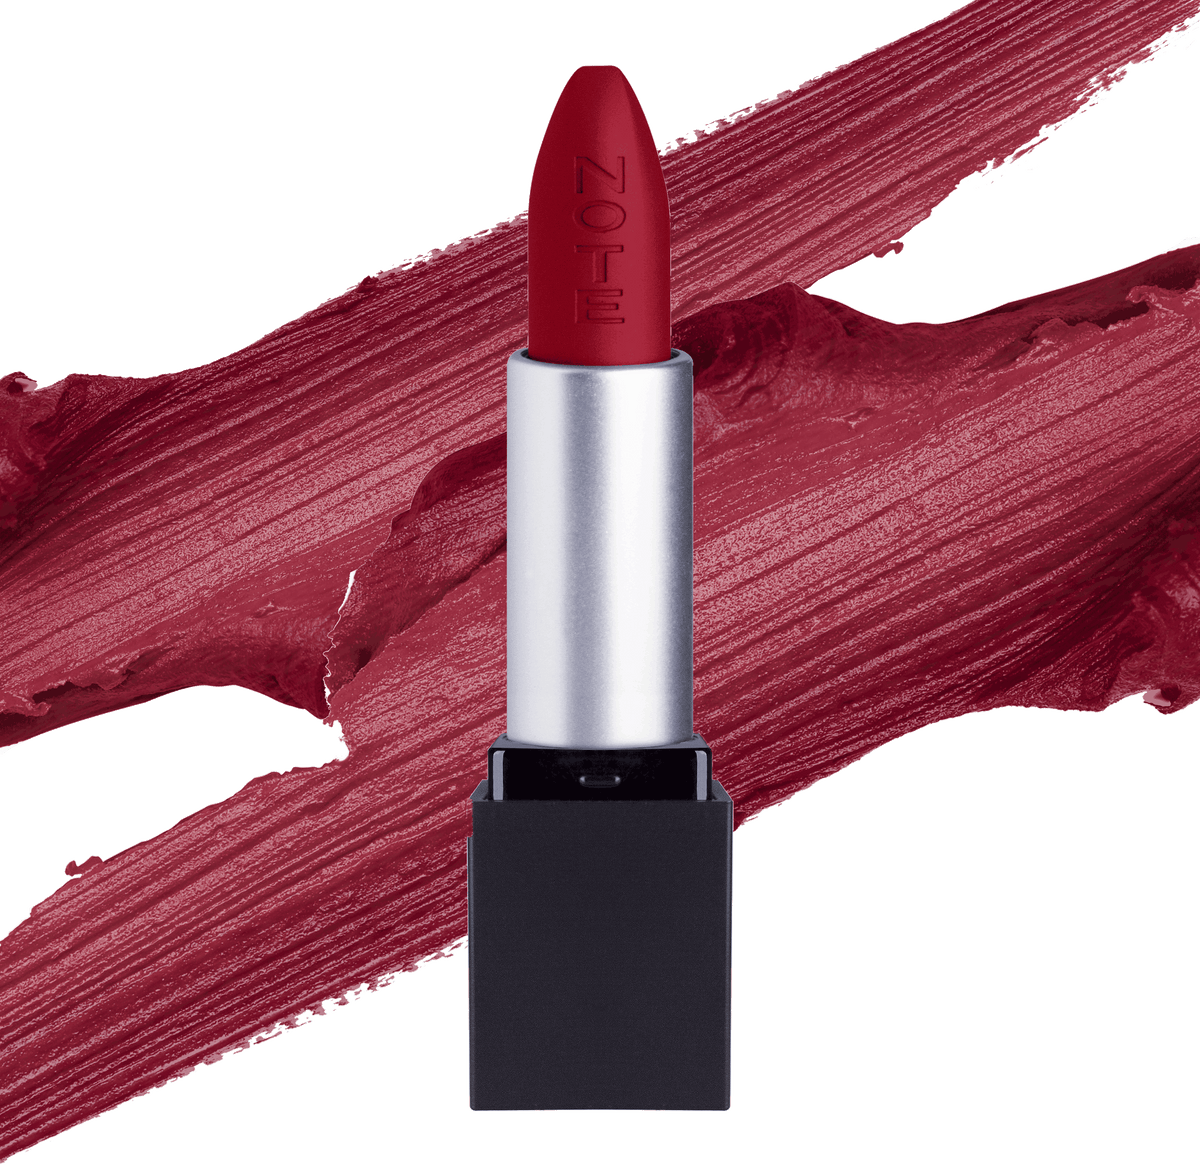 Mattever Lipstick - Halal Lipstick, Vegan Lipstick, Cruelty Free Lipstick, Paraben Free Lipstick, Matte, Kiss Proof, Lightweight, Creamy